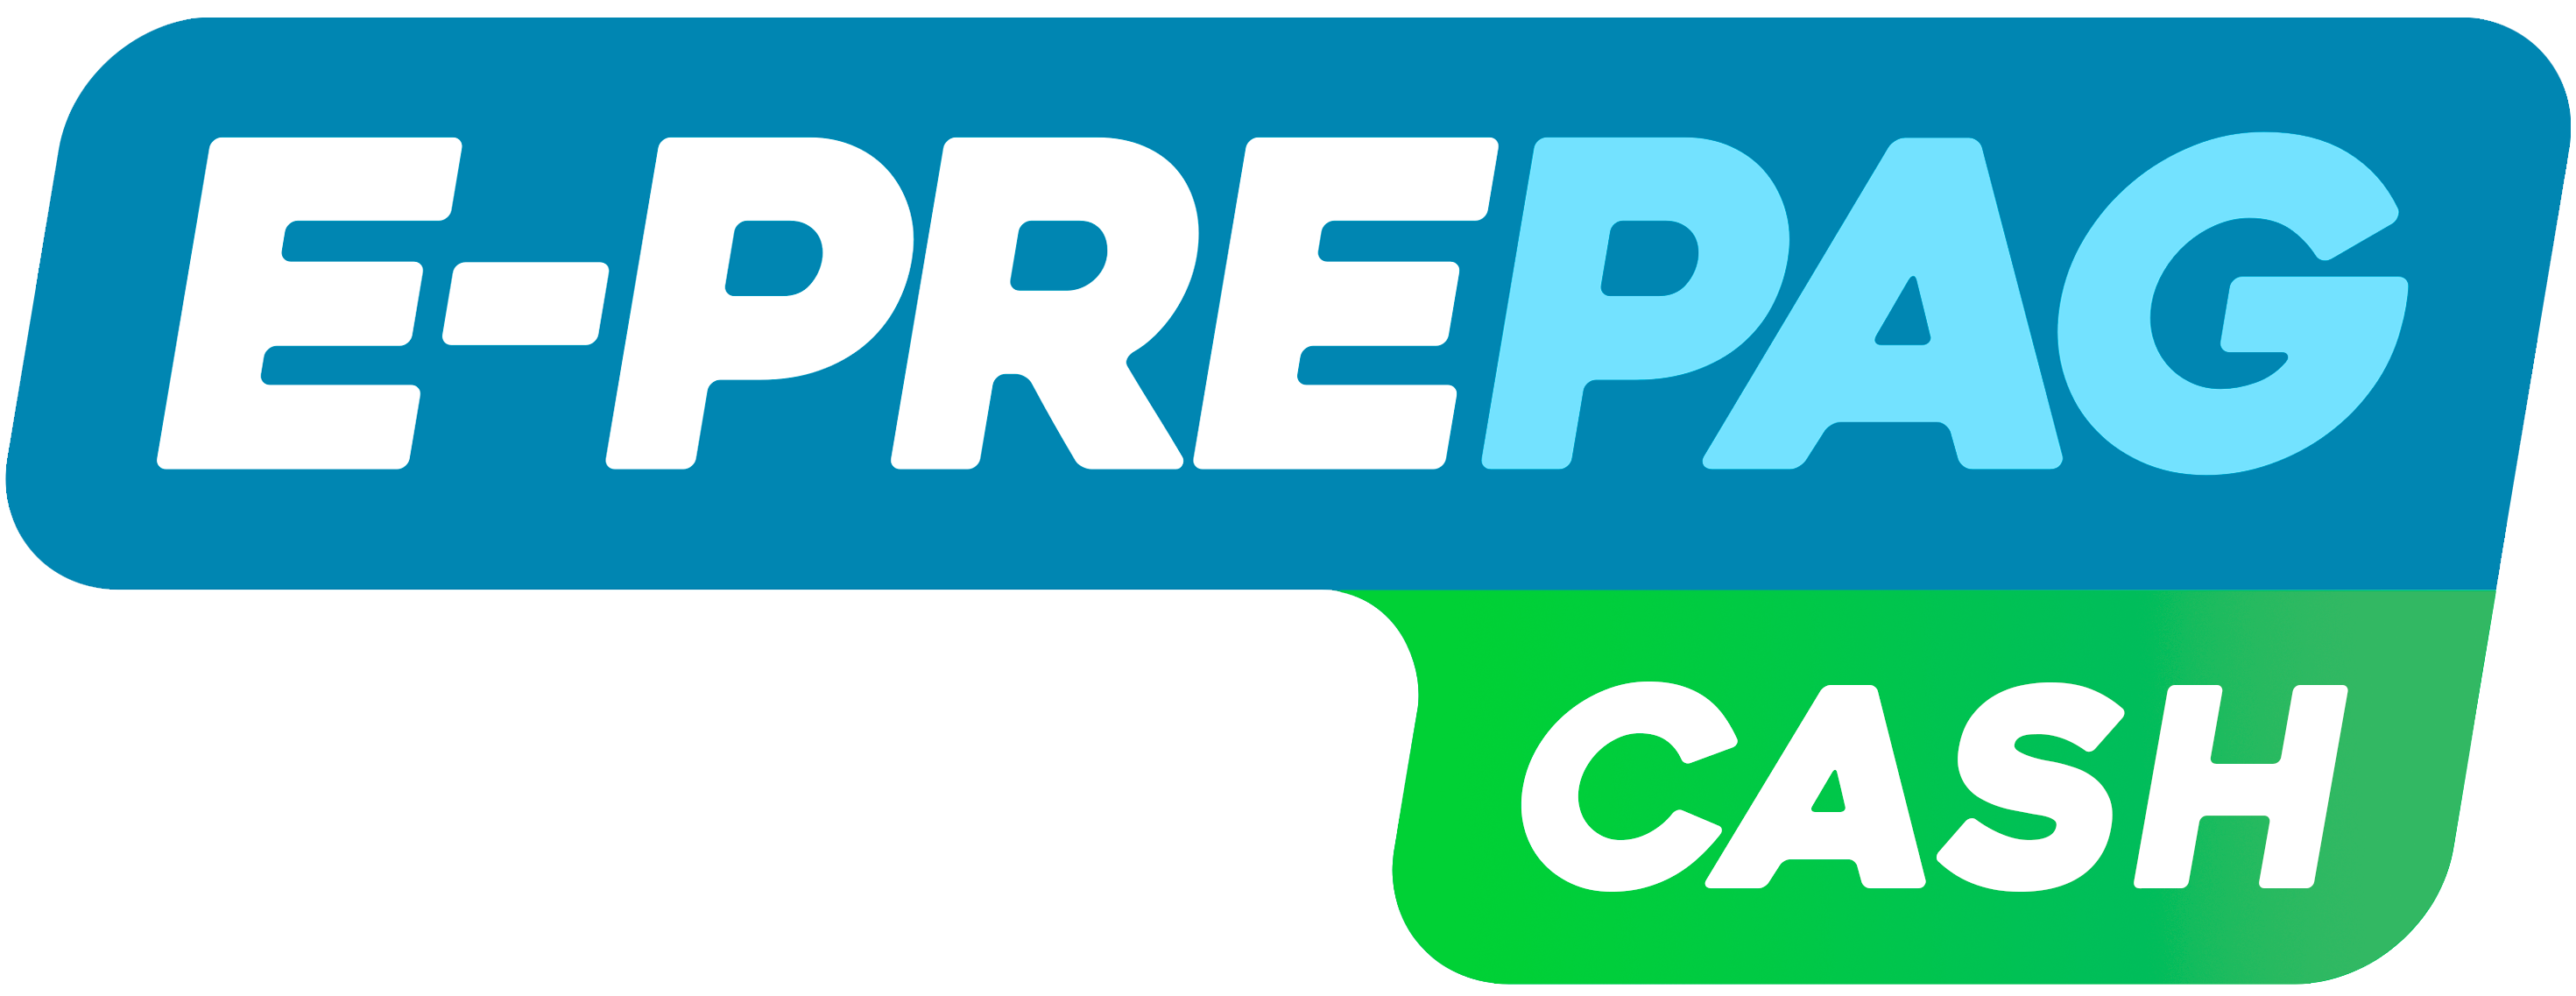 E-Prepag Cash